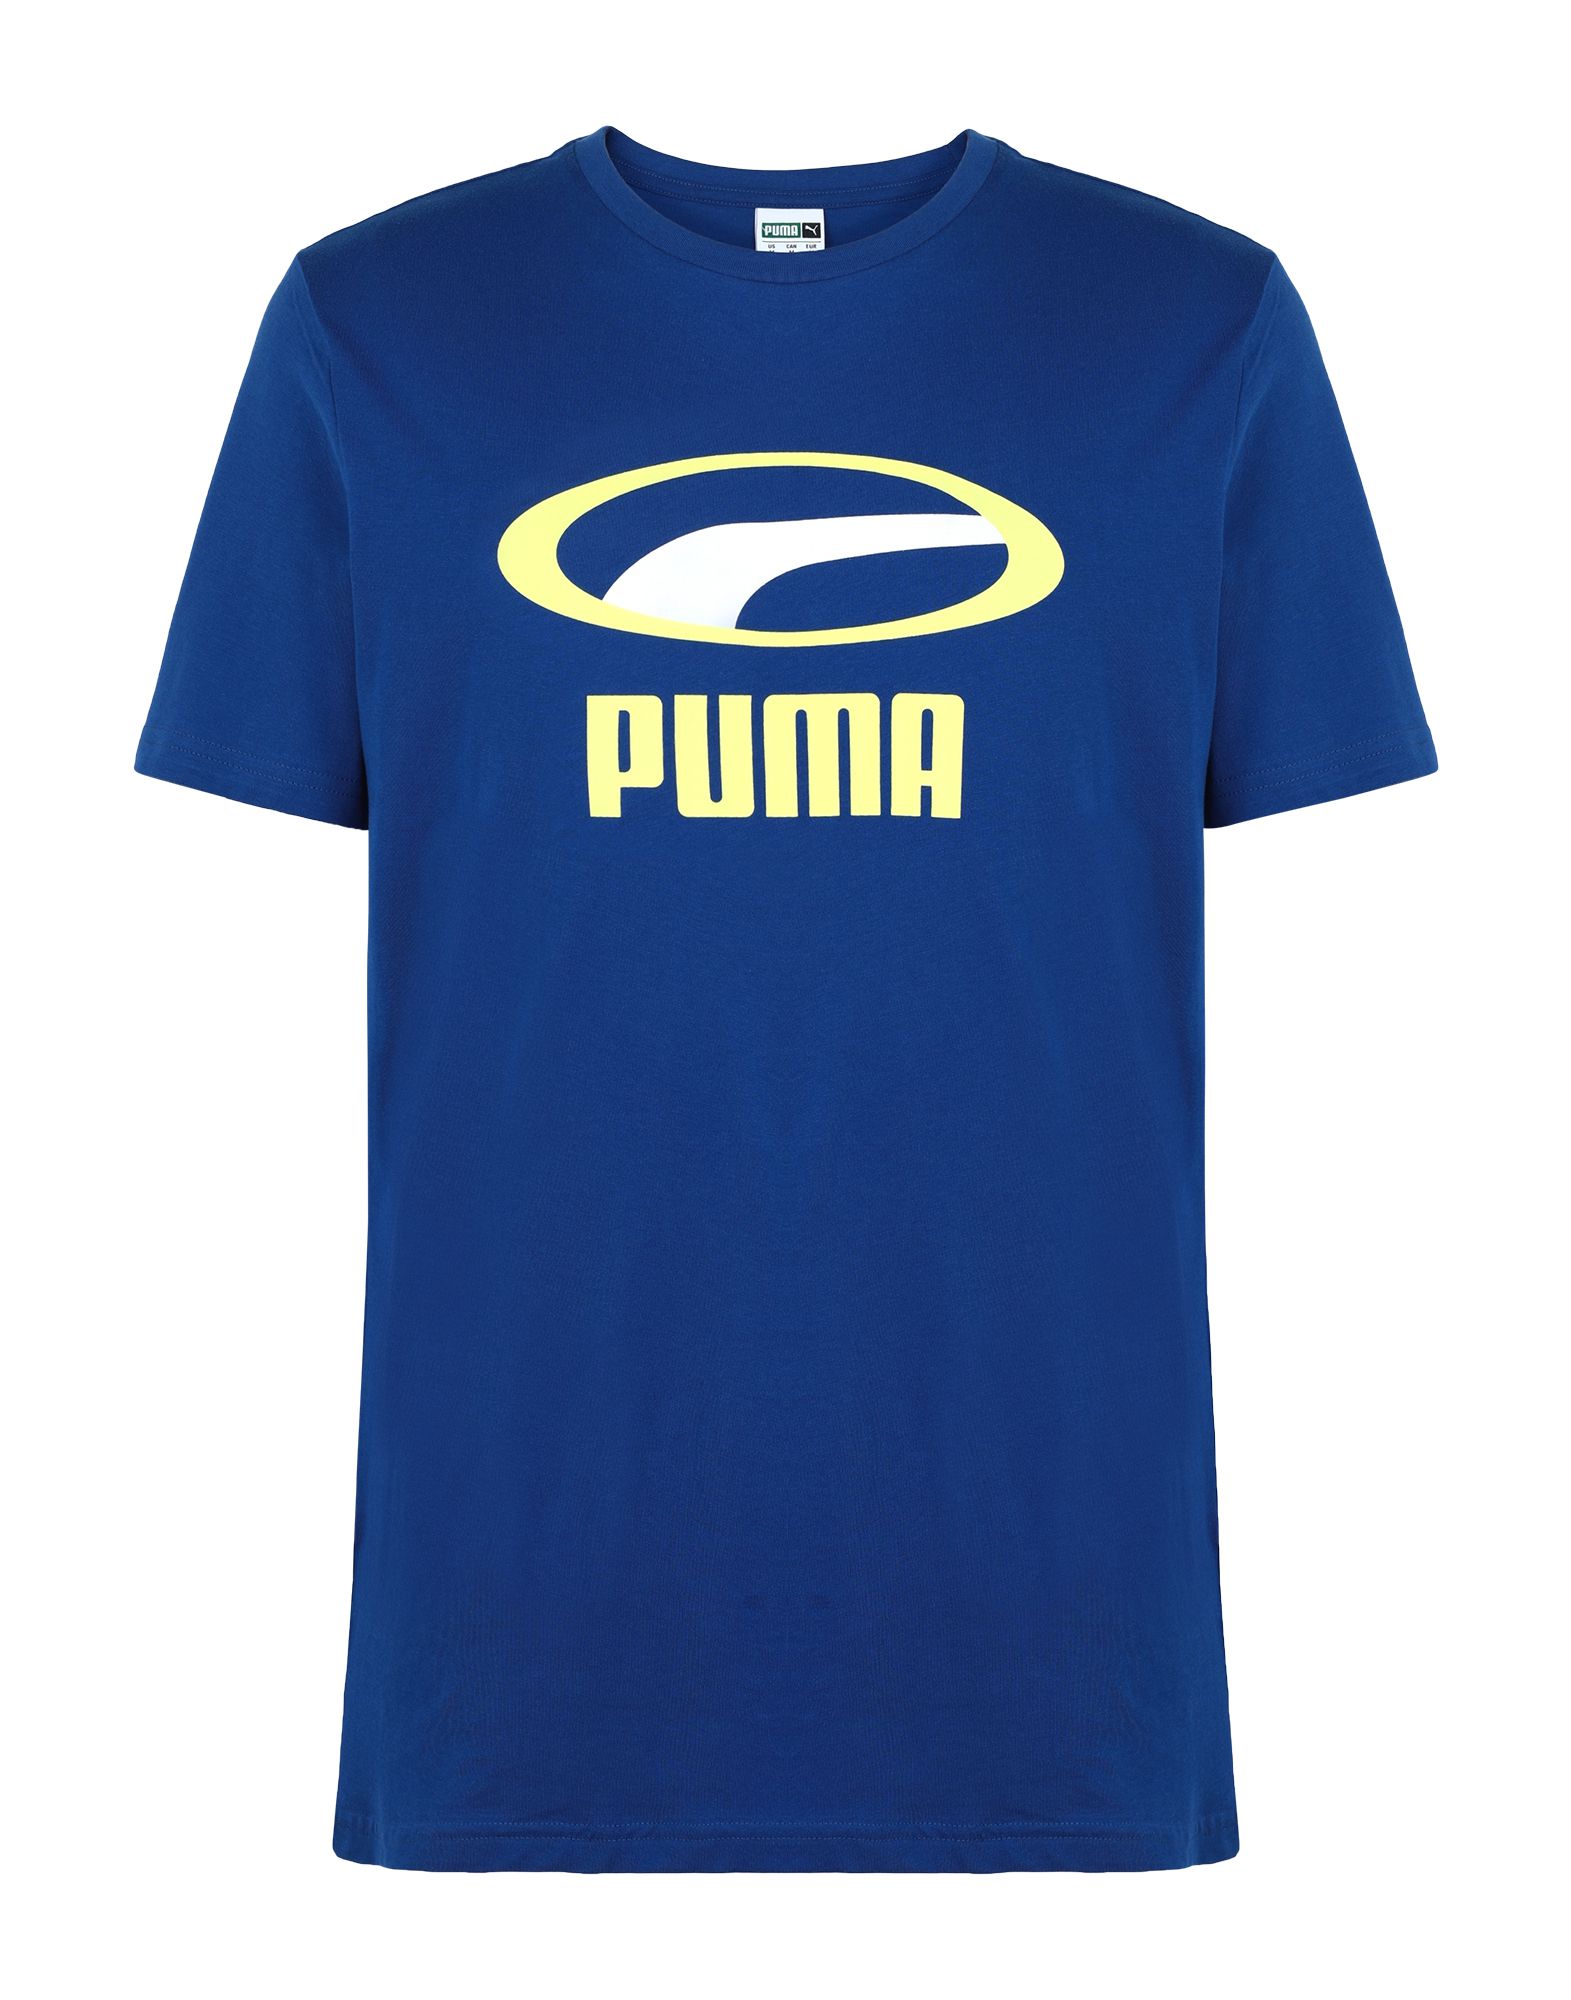 PUMA T-shirts Herren Blau von PUMA